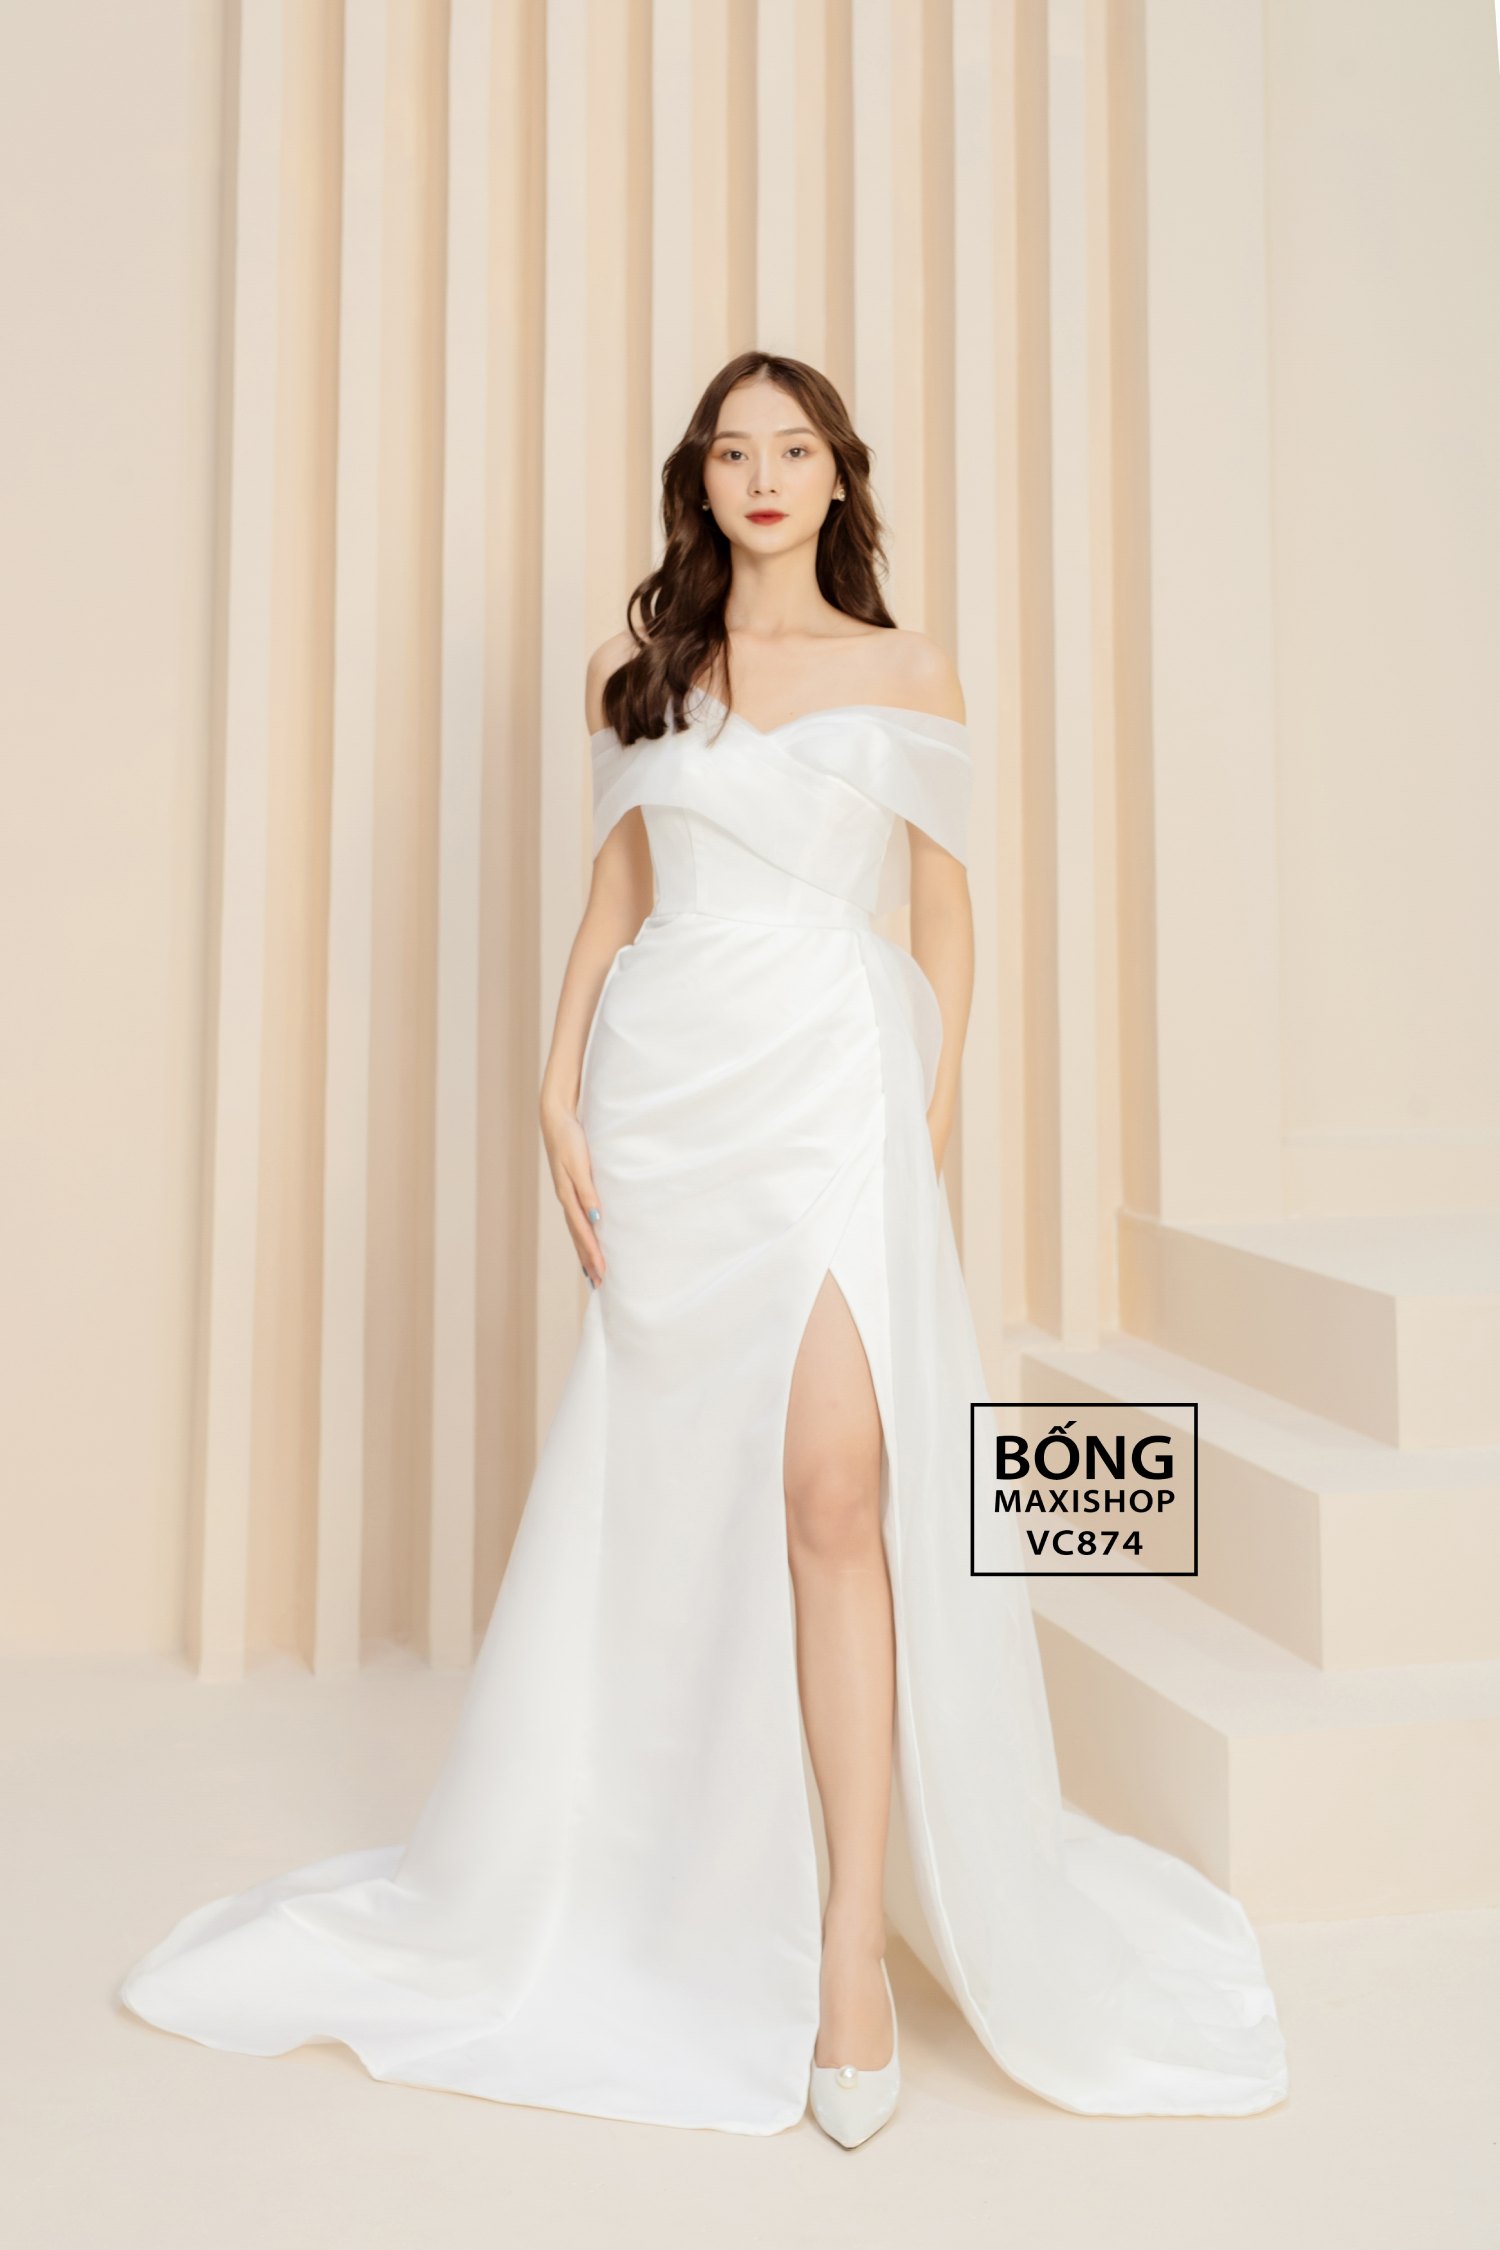 Áo cưới đẹp, thịnh hành nhất năm 2022 - Tuong Lam Photos